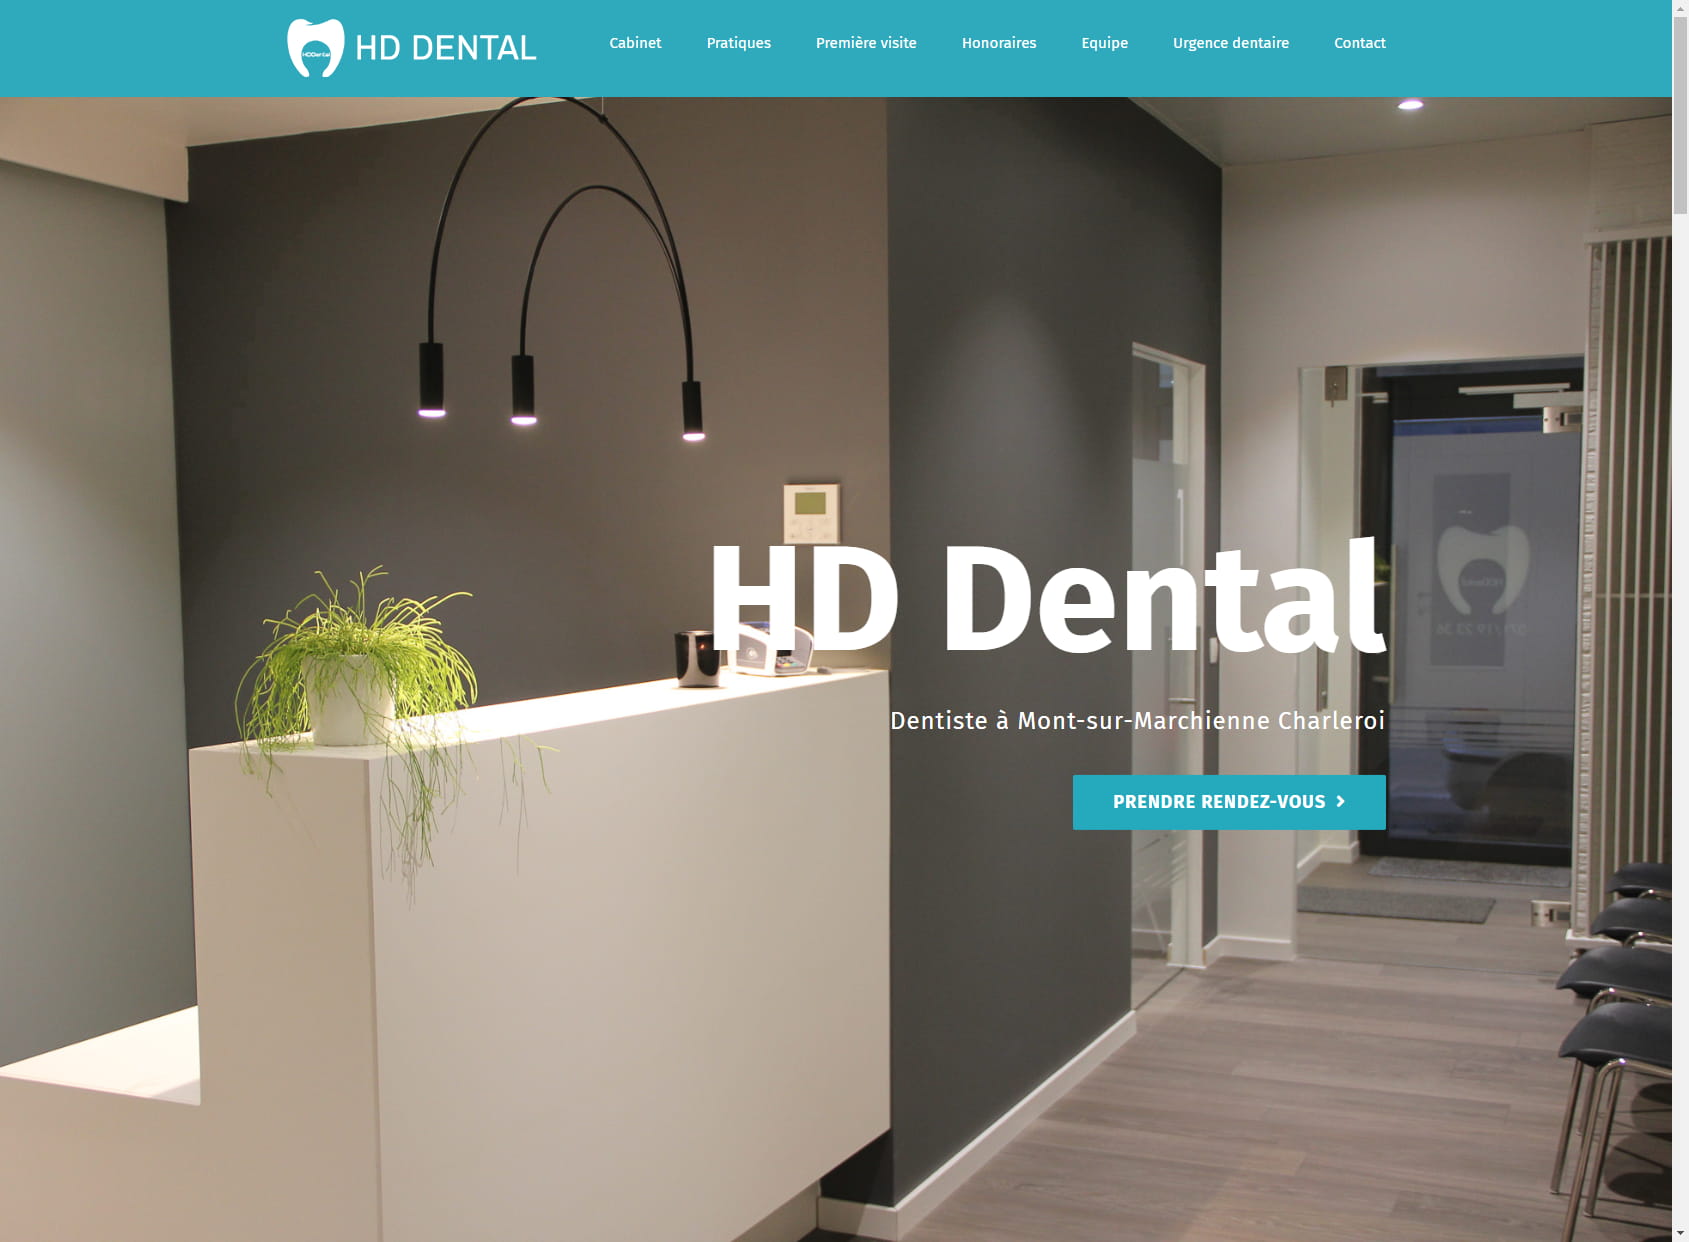 HD Dental Hadrien Duterme